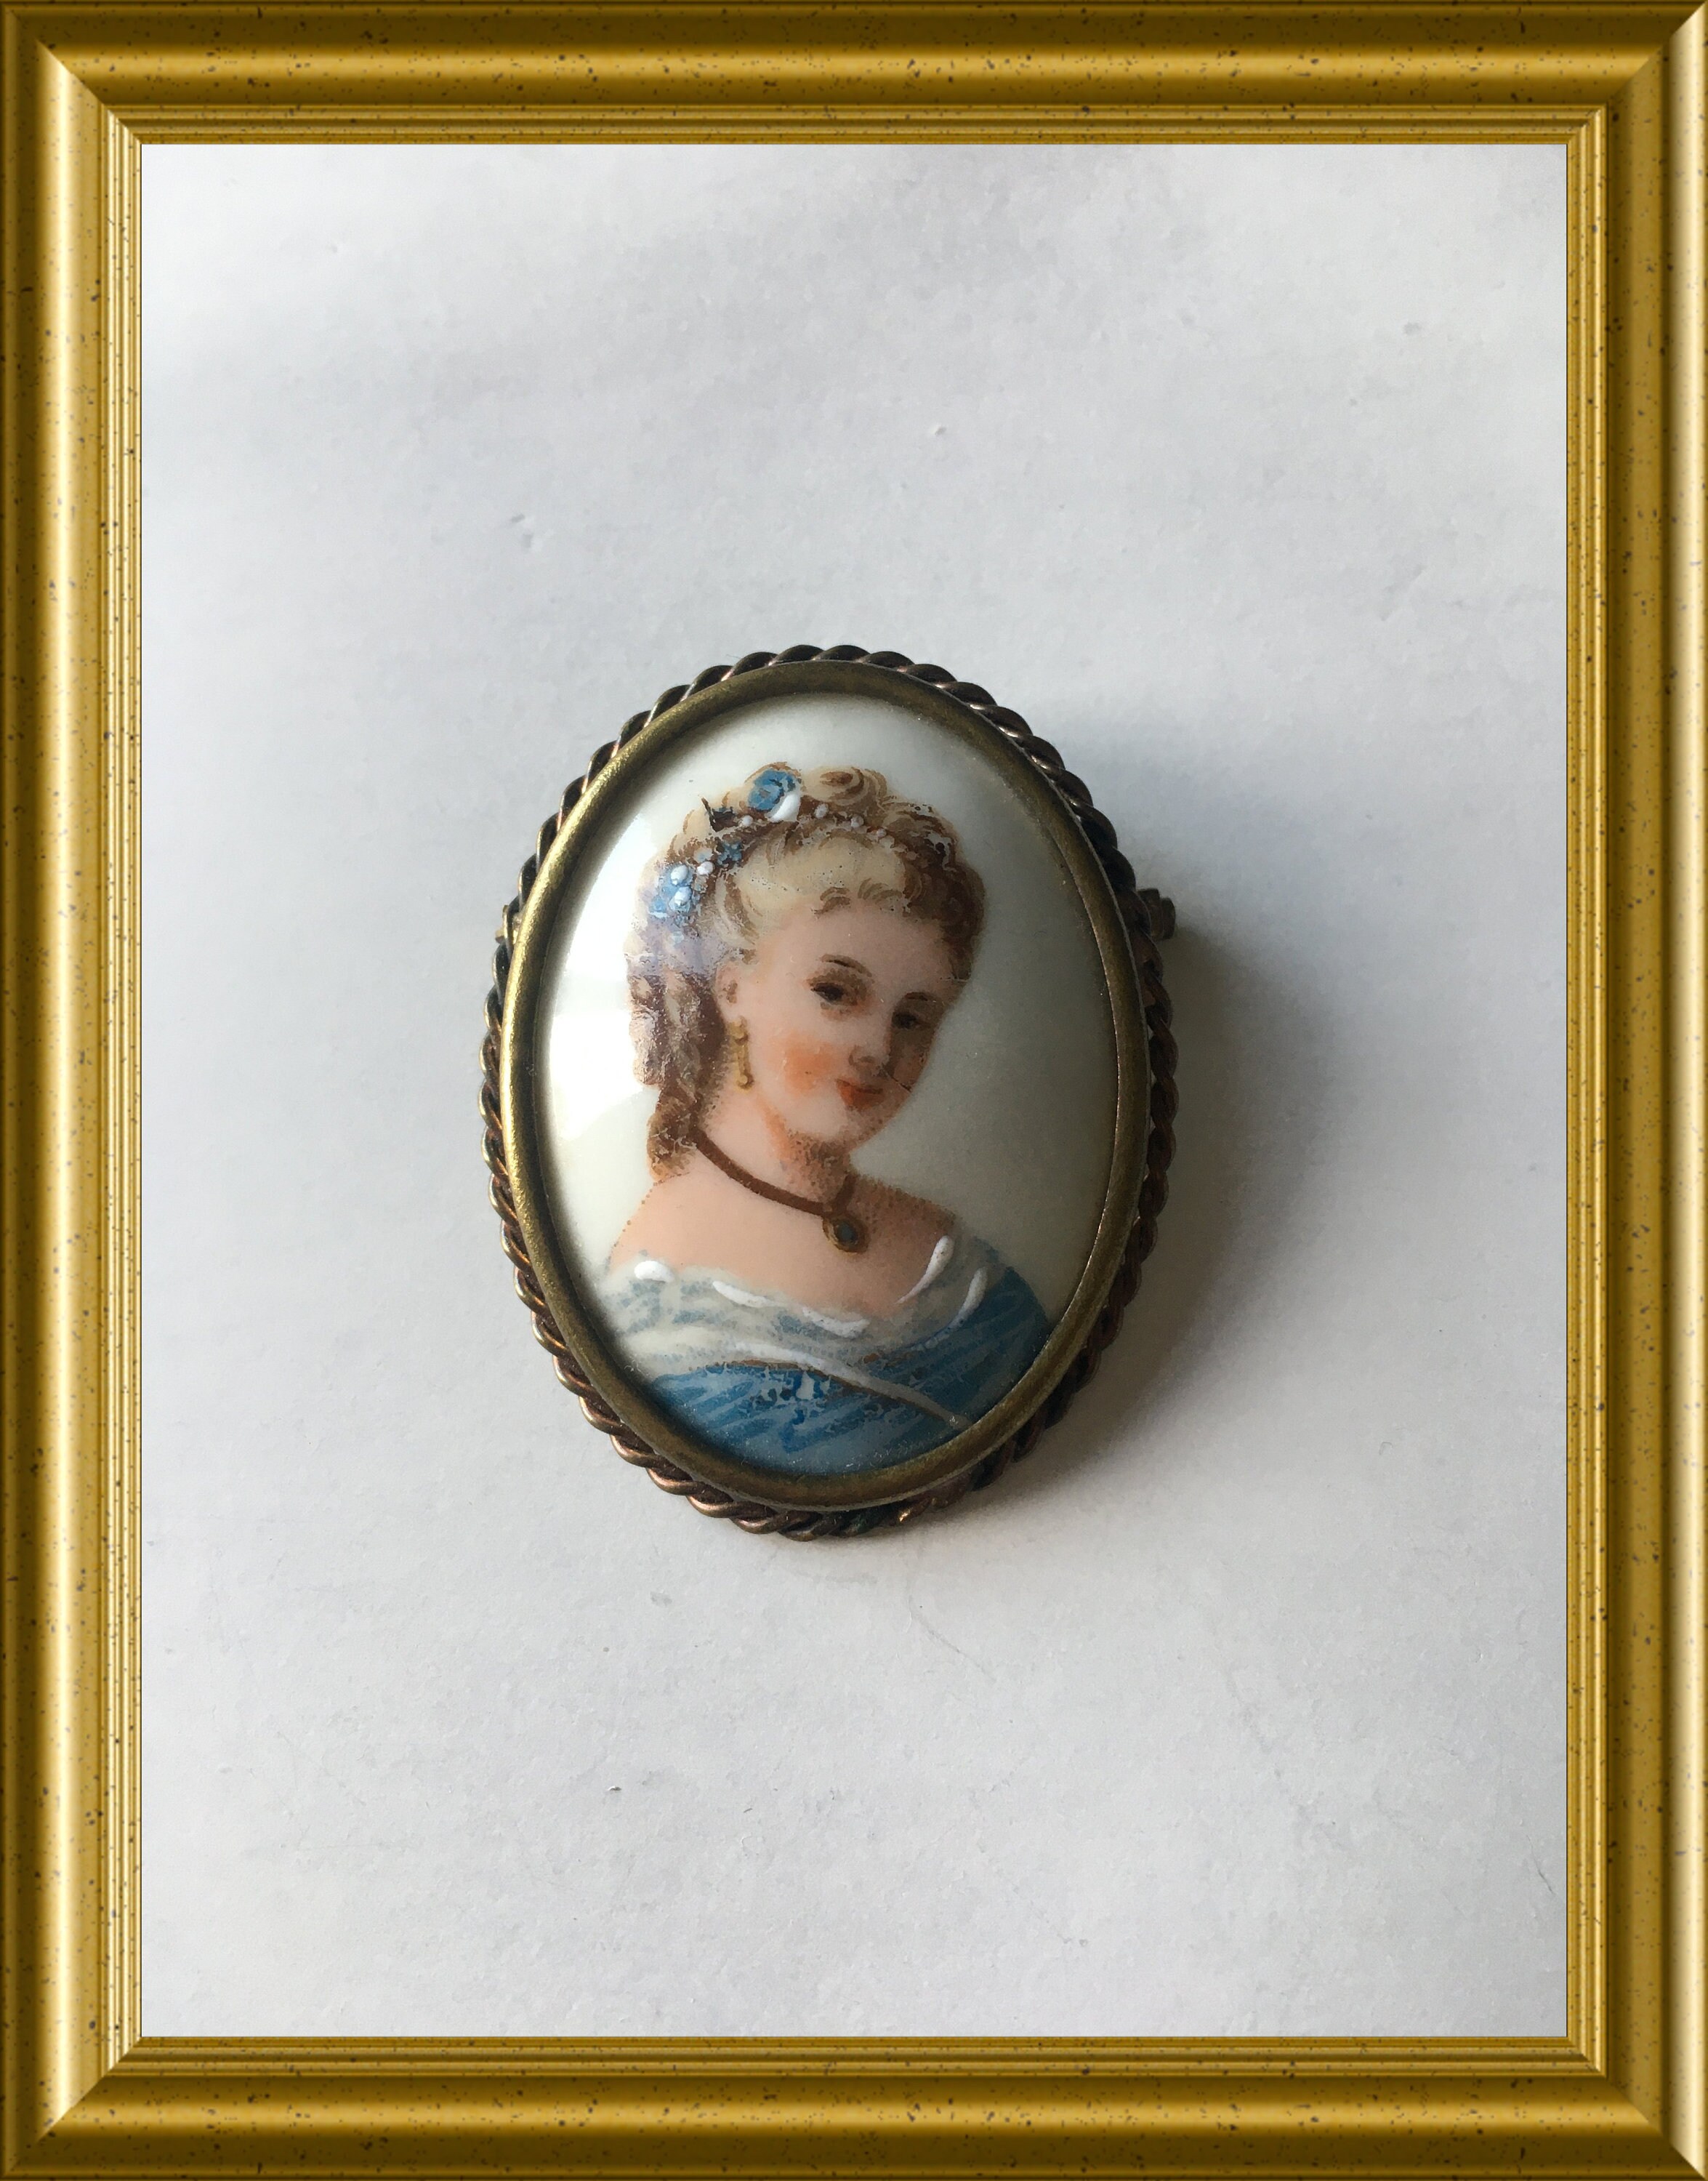 Vintage French Limoge porcelain portrait brooch